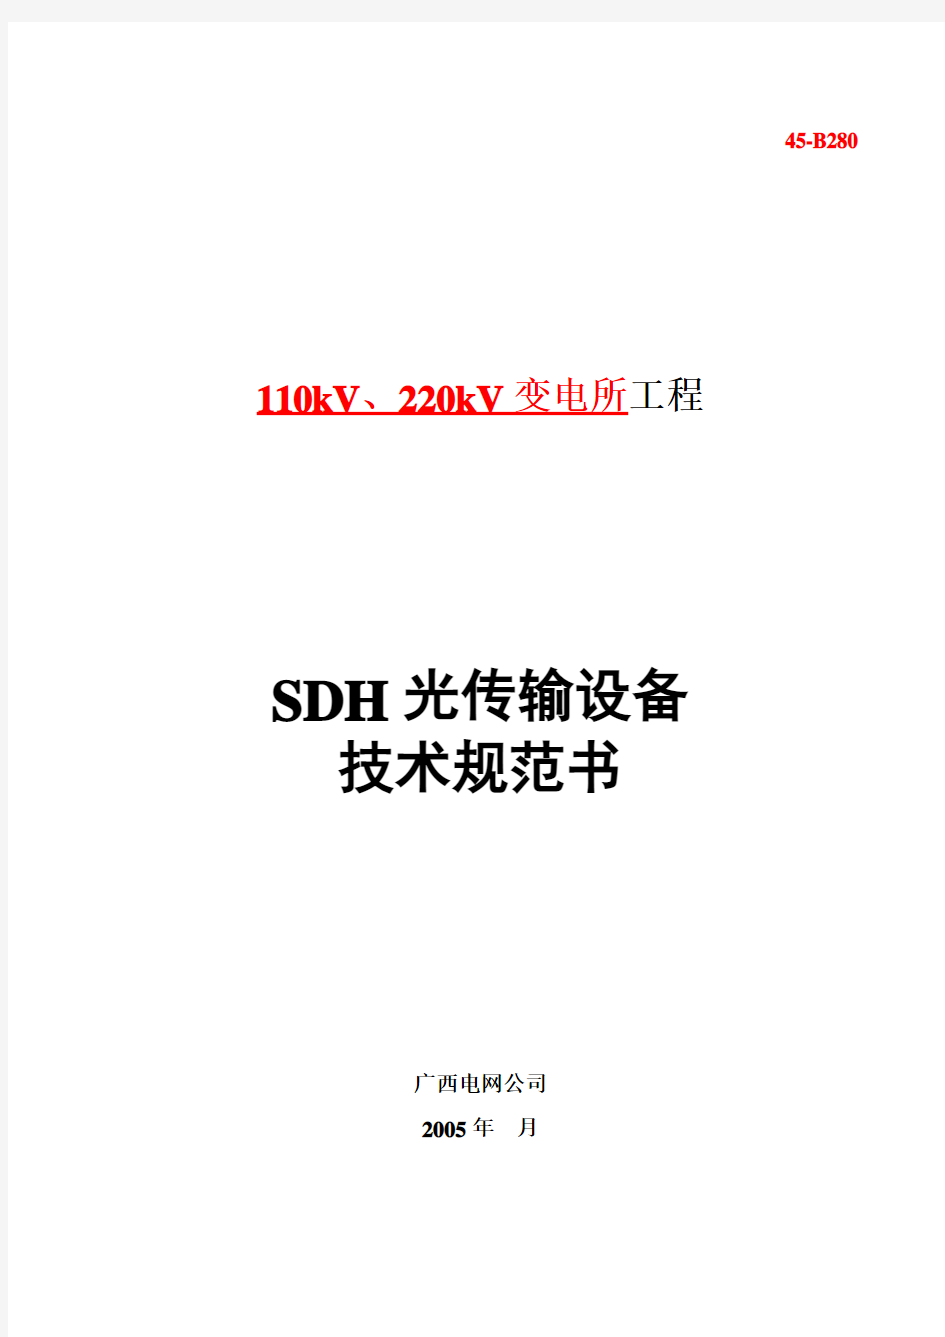 SDH光传输设备技术规范书